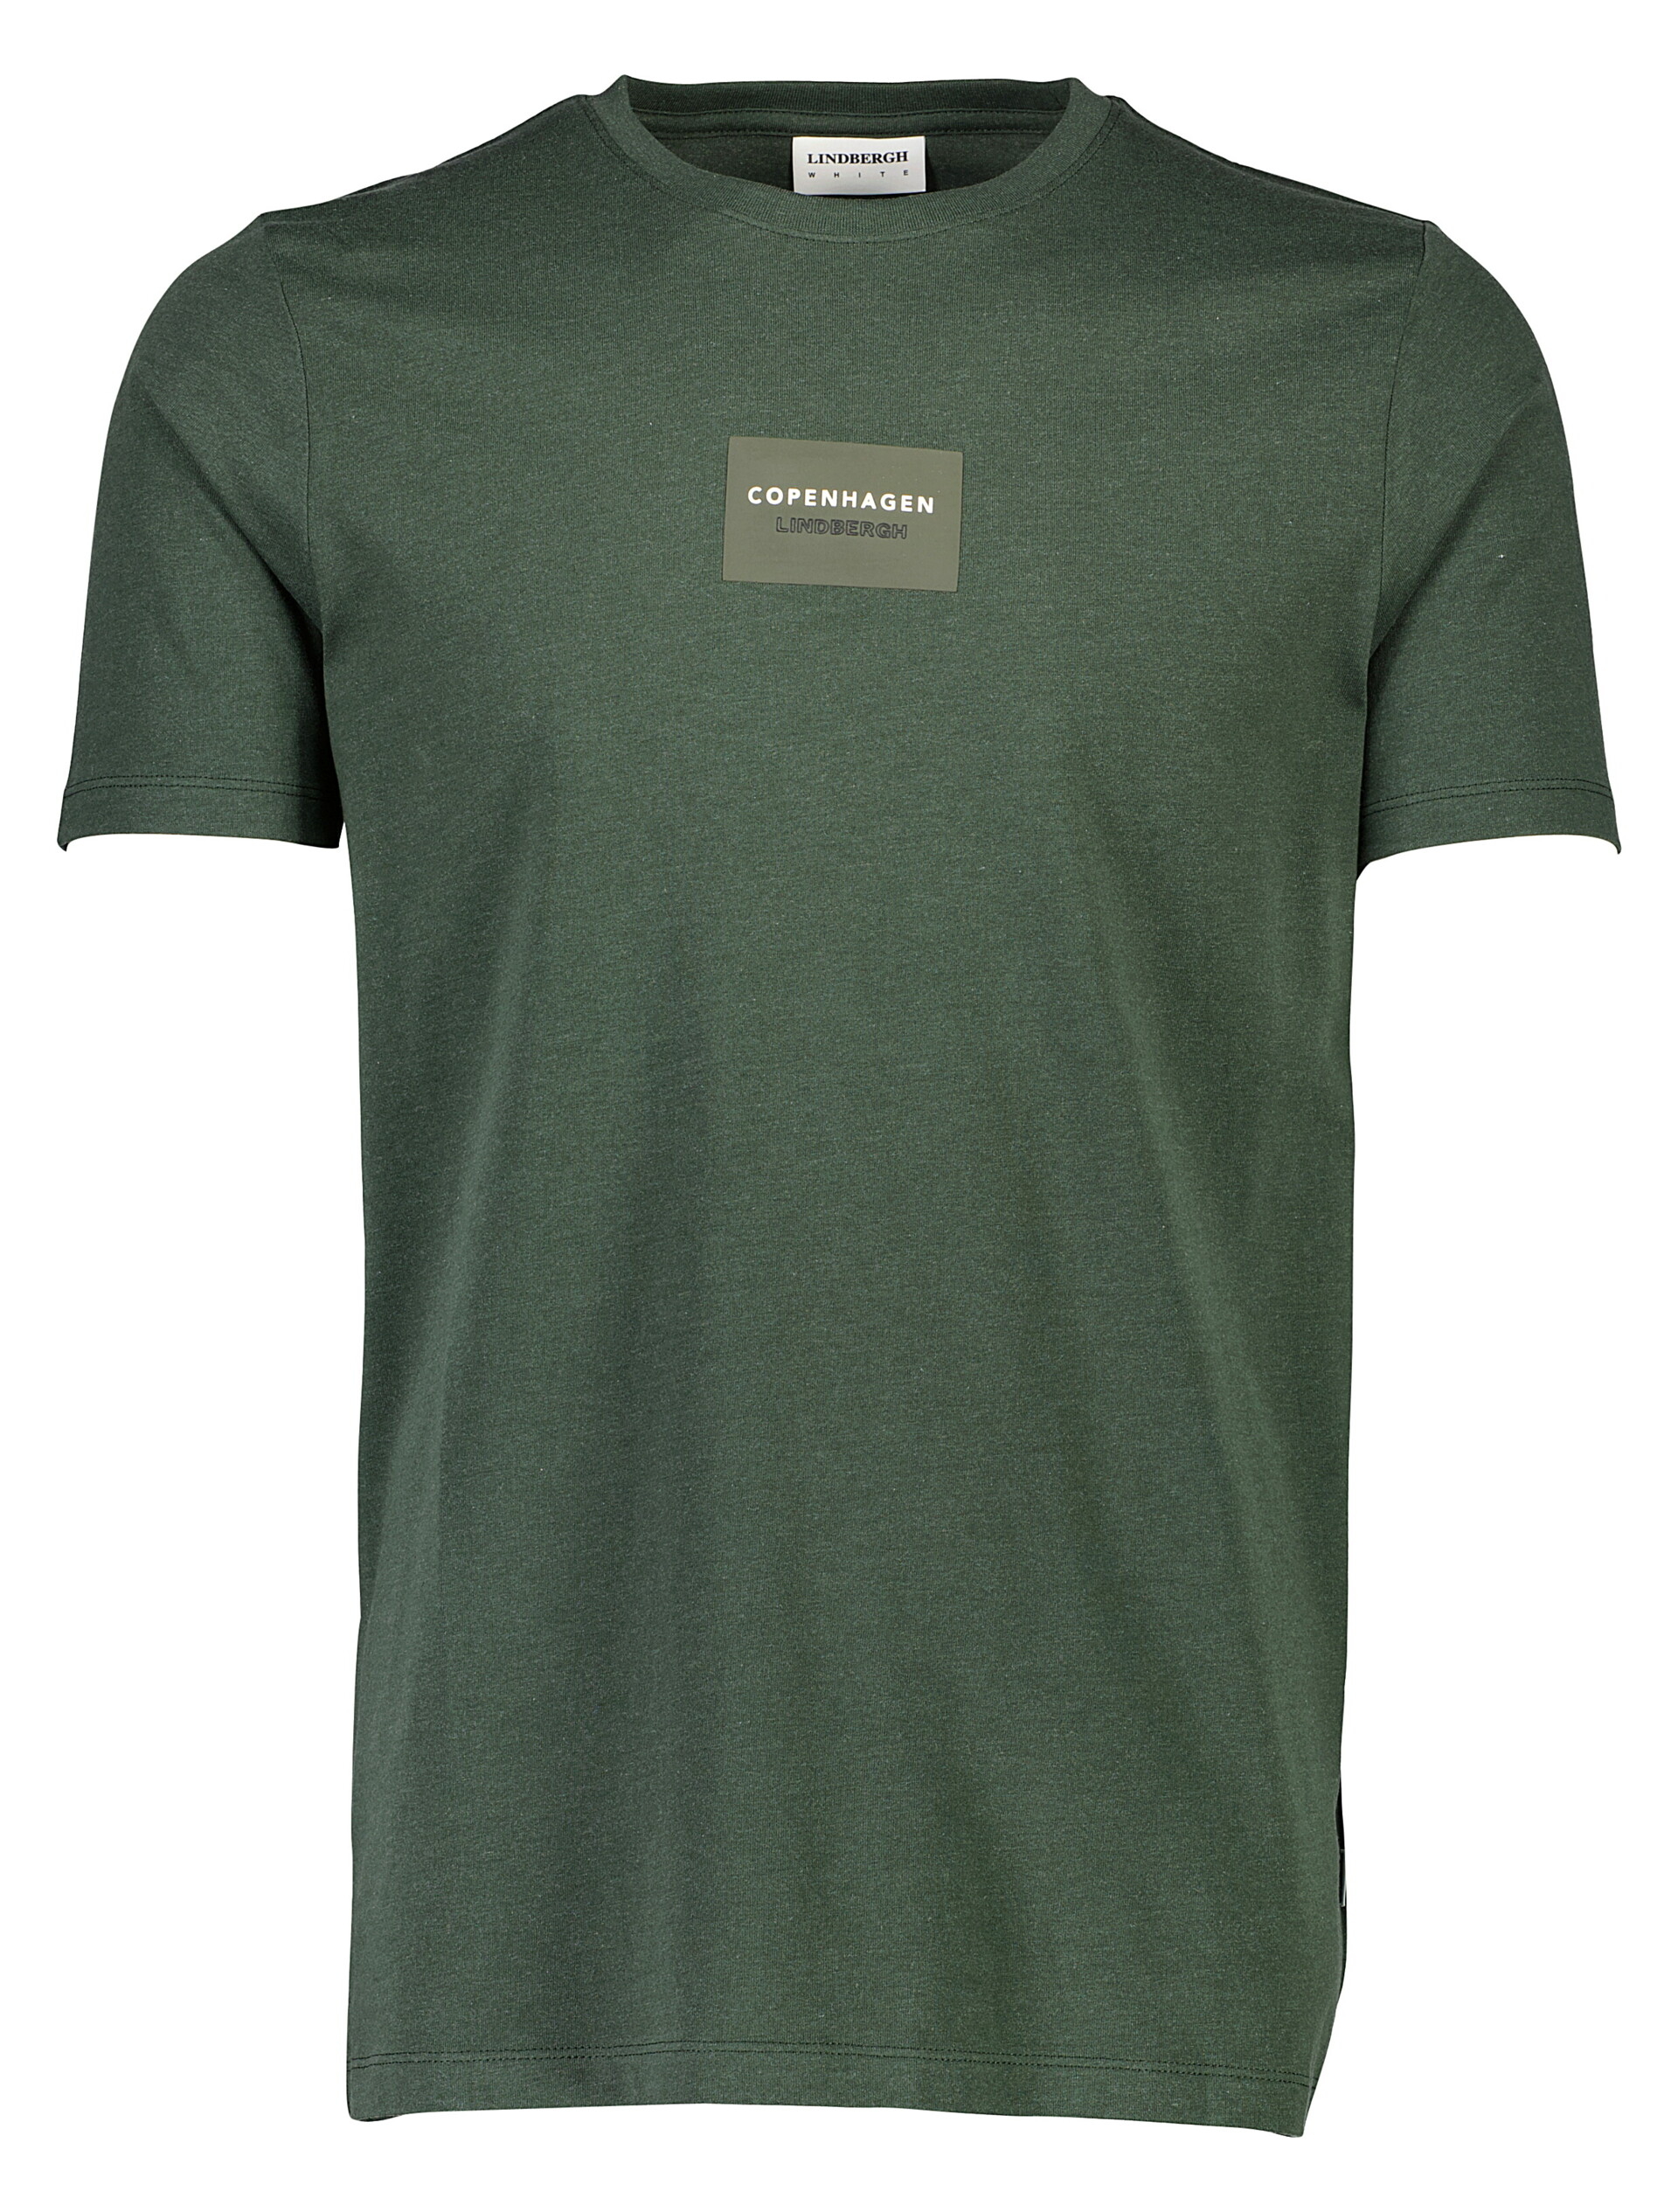 Lindbergh T-shirt grün / green mel